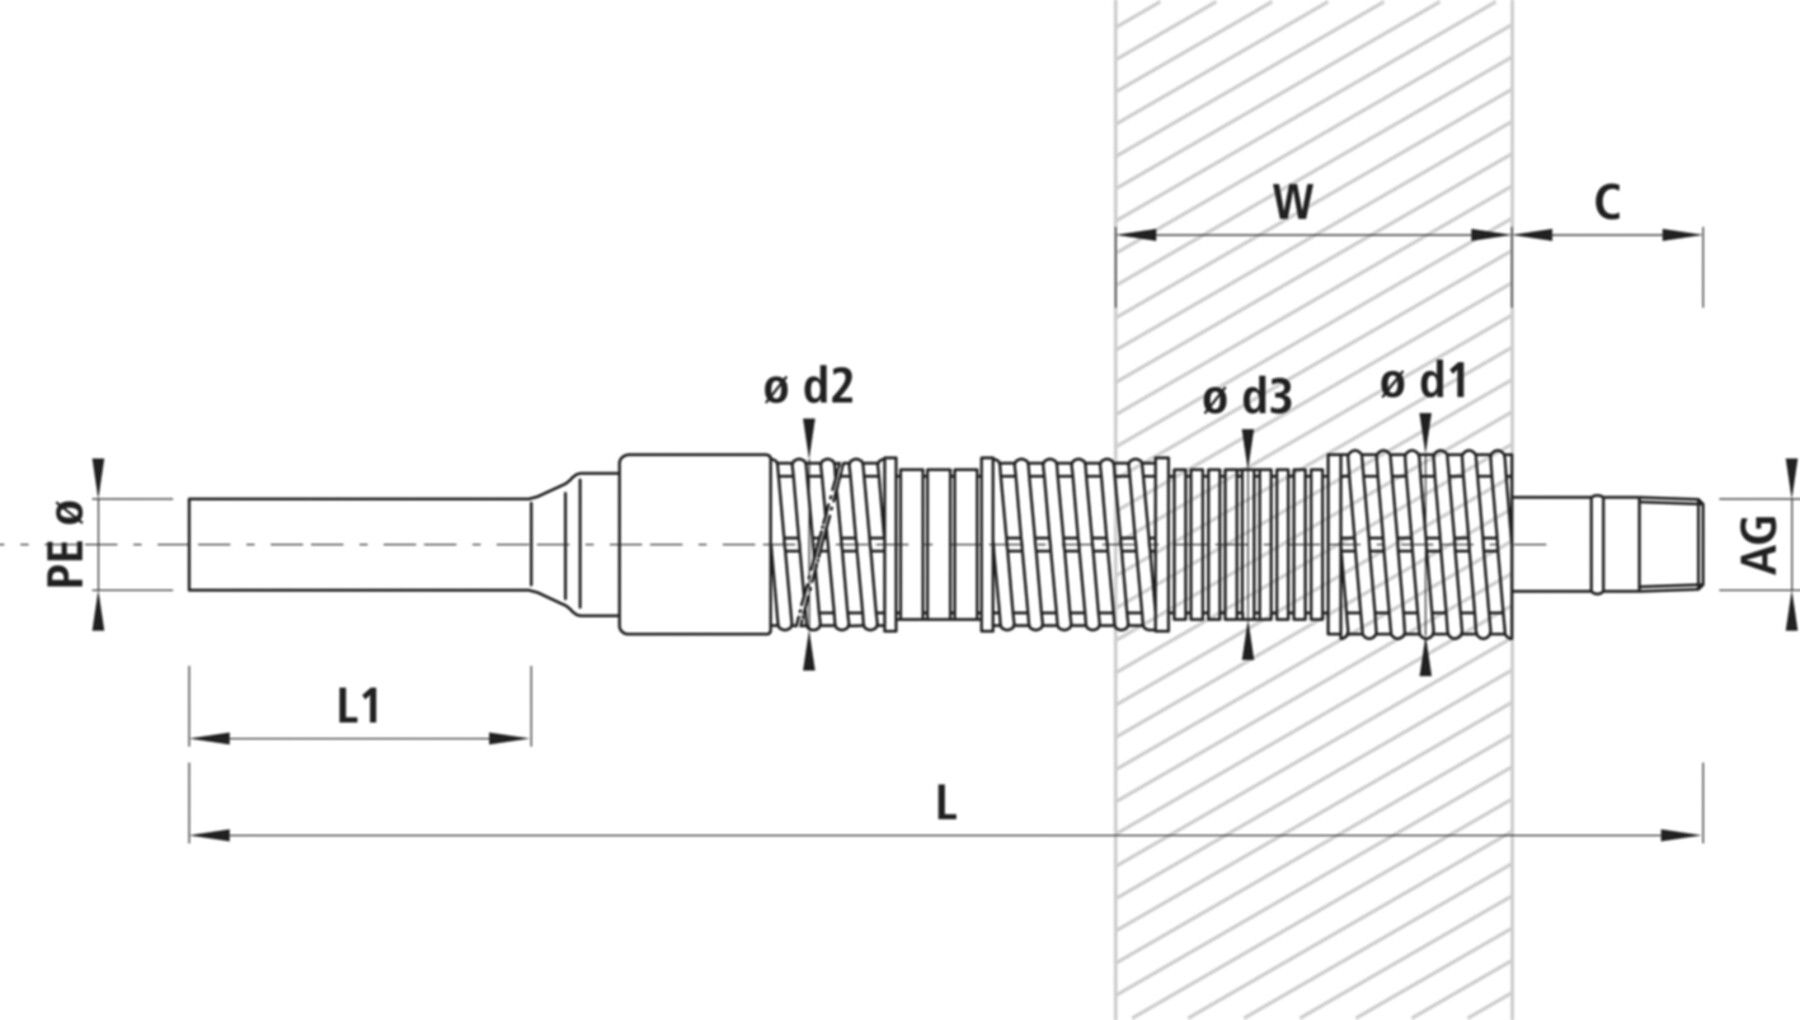 Mauerdurchführung PE-AG 6850 d 50mm - 11/2" L = 1100mm - Hawle Hausanschluss- und Anbohrarmaturen